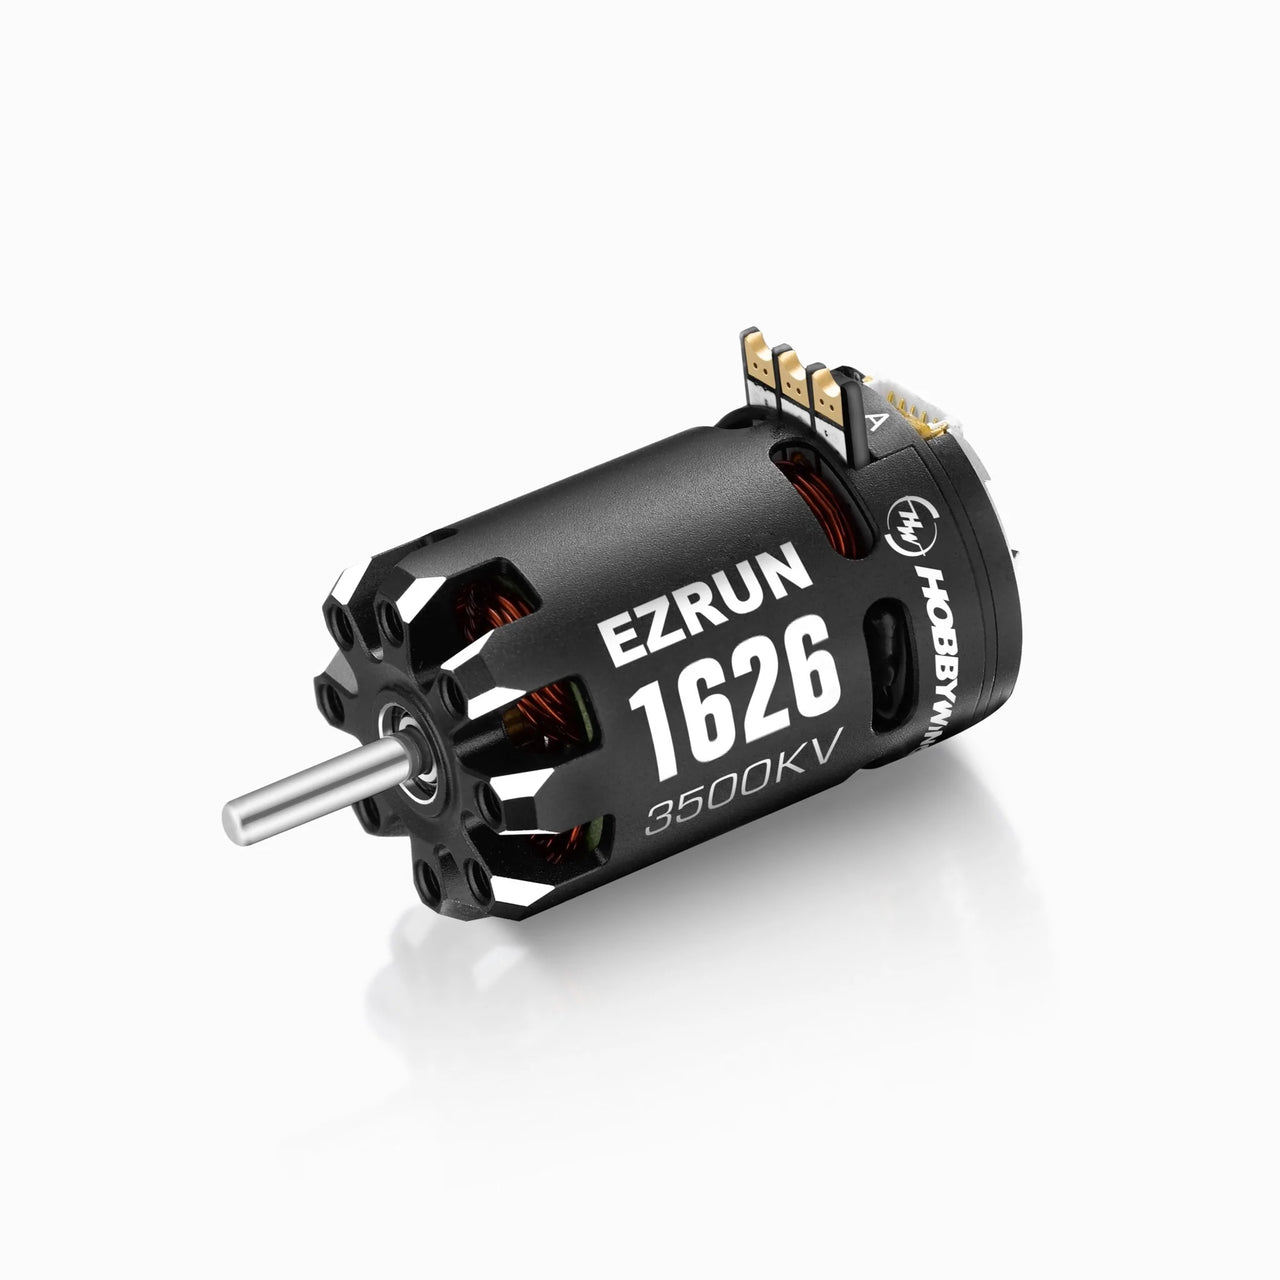 HOBBYWING Ezrun 1626 Motor con sensor 30402653